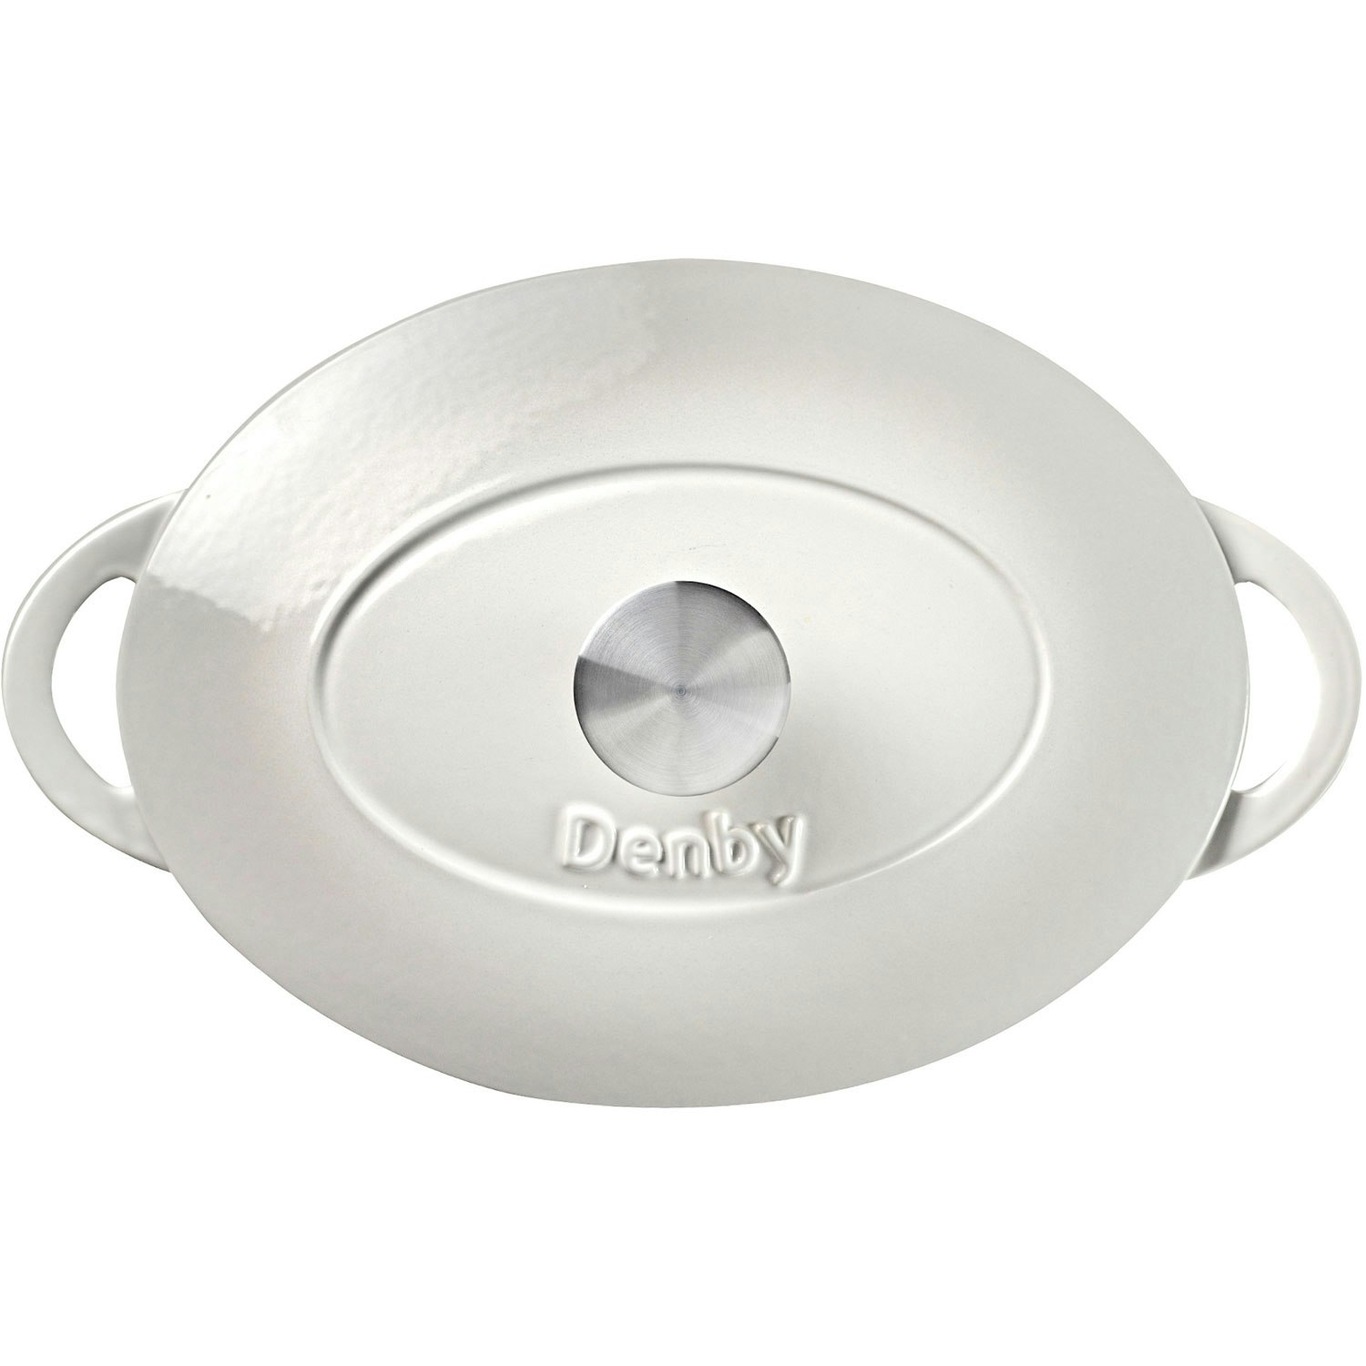 https://royaldesign.com/image/2/denby-cast-iron-28cm-oval-casserole-11?w=800&quality=80